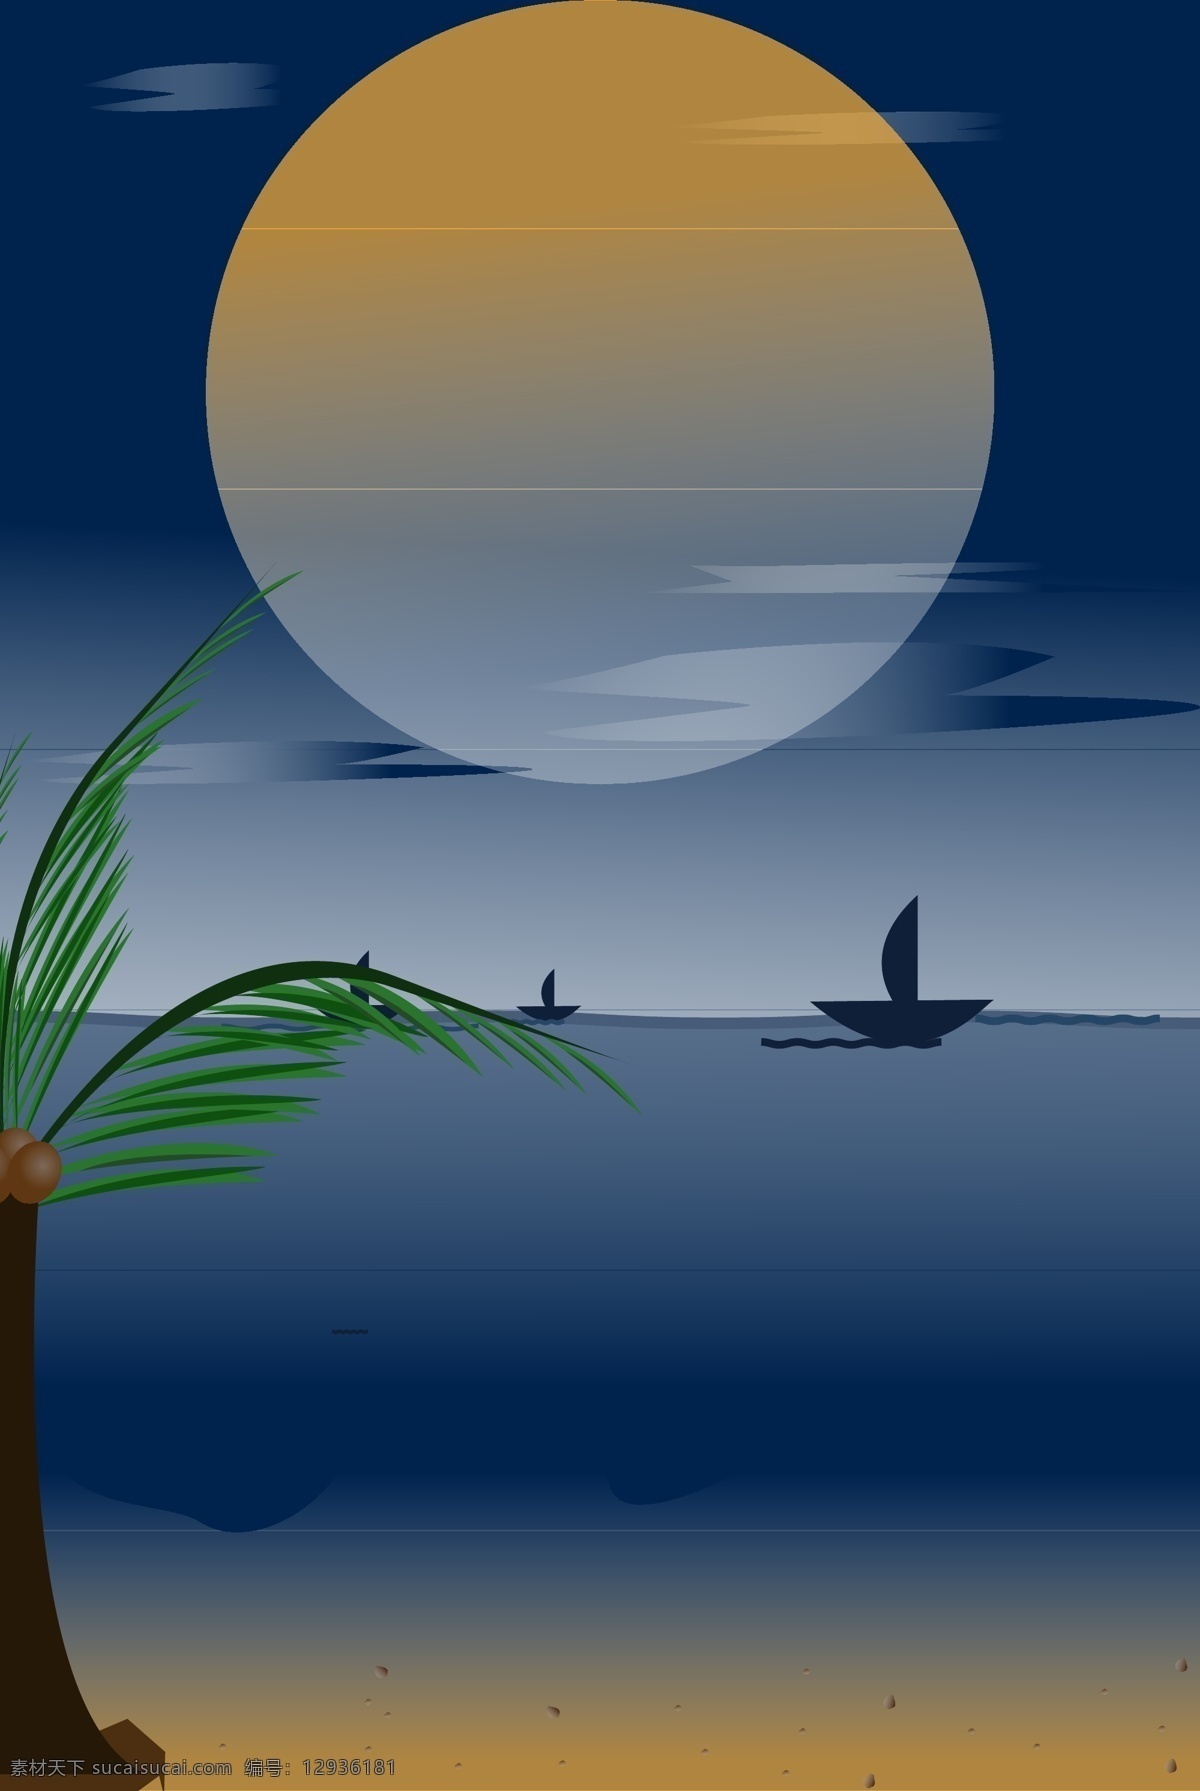 扁平 风平 静 夜晚 海边 矢量 椰子树 沙滩 扁平风 平静 渐变 深蓝色调 夜空